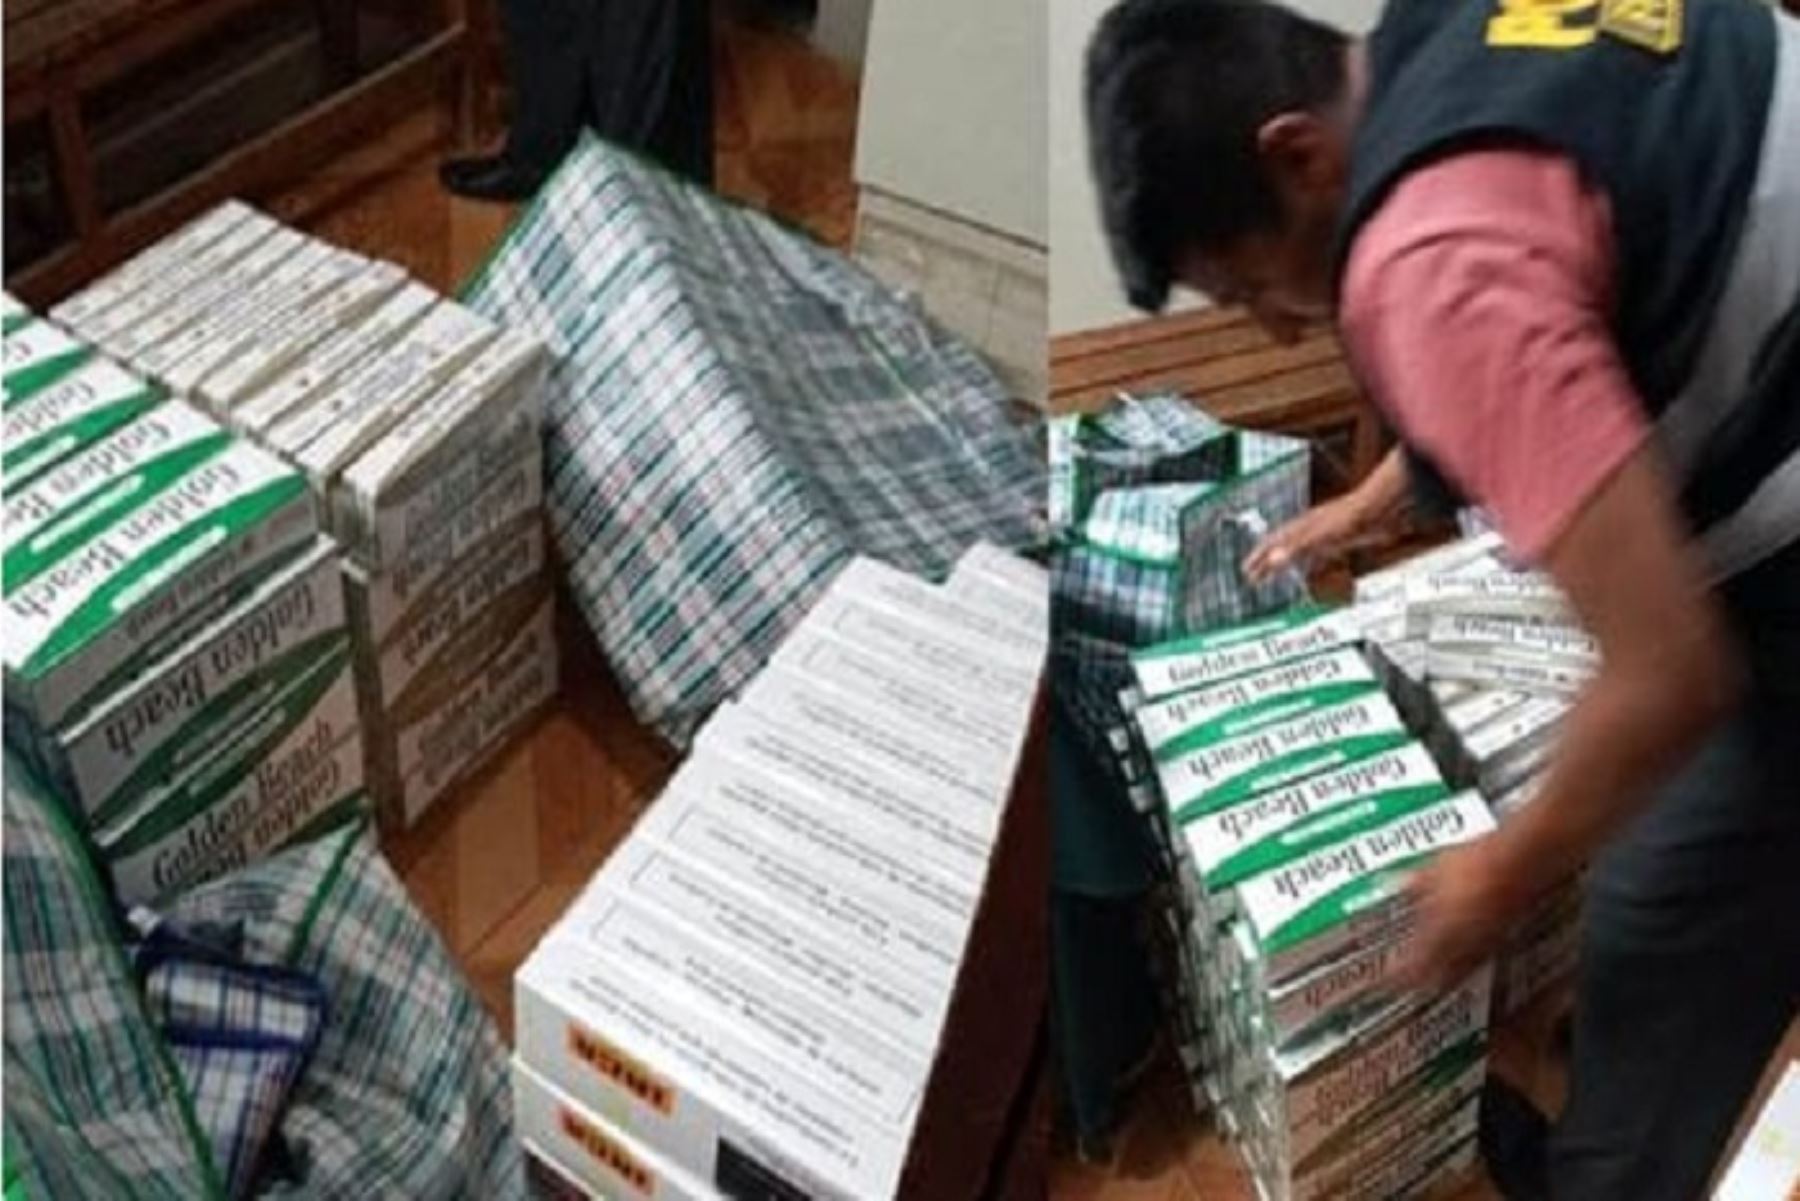 El 80% de los cigarrillos de contrabando que se comercializan en el país son de procedencia paraguaya, según cifras proporcionadas por la Policía, Aduanas y las diferentes municipalidades a nivel nacional,